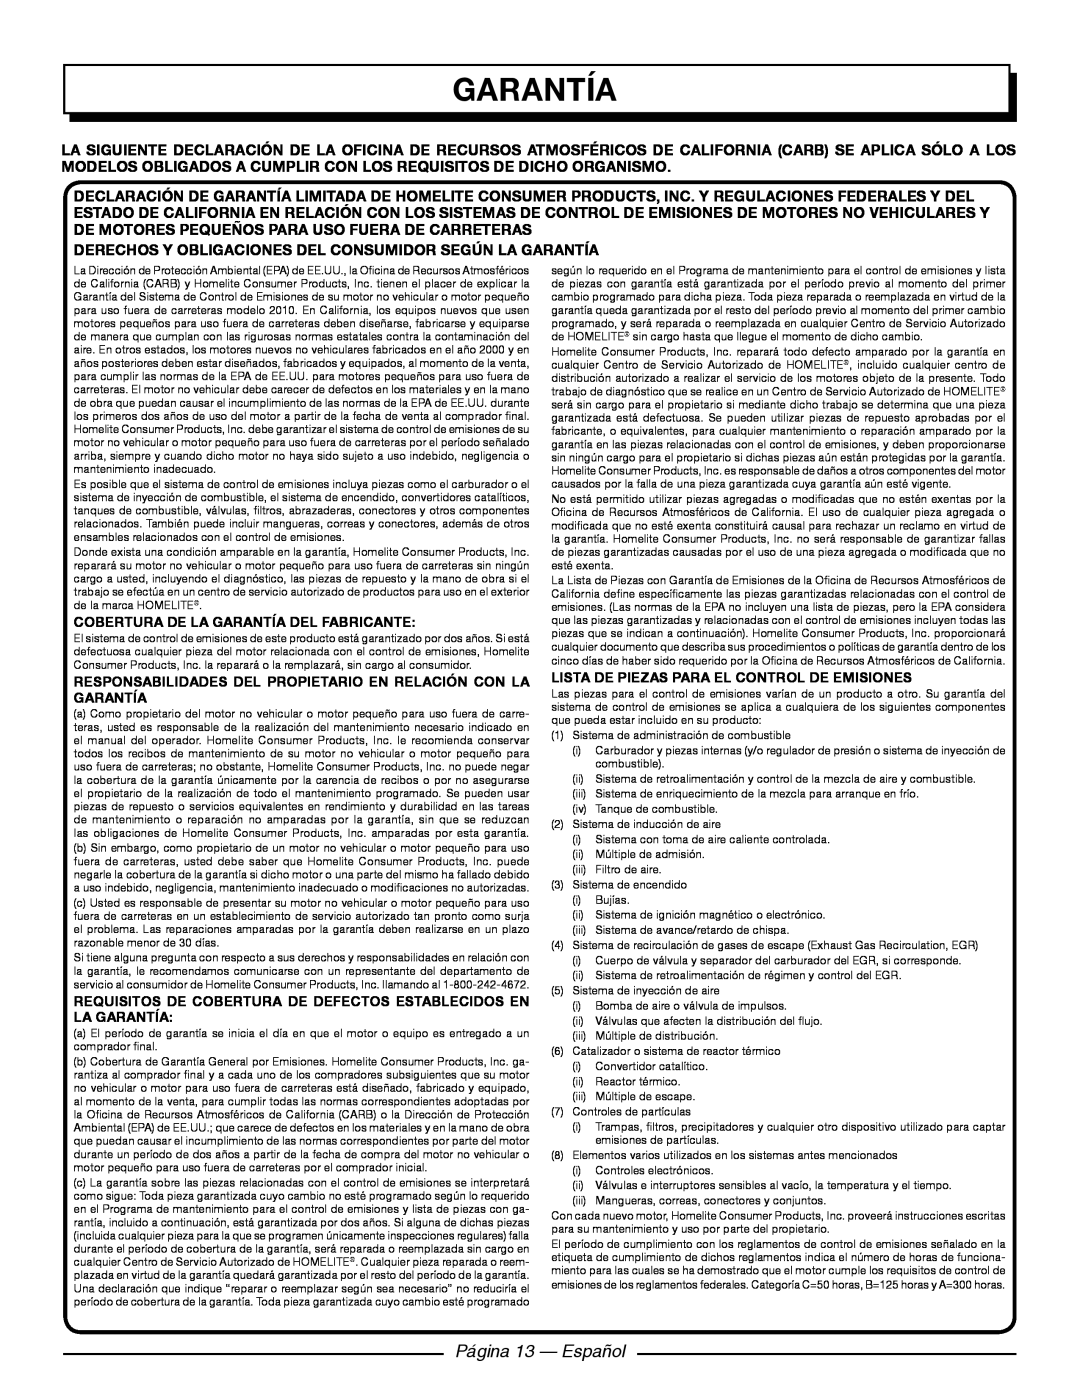 Homelite UT09521 manuel dutilisation Página 13 - Español, Derechos Y Obligaciones Del Consumidor Según La Garantía 